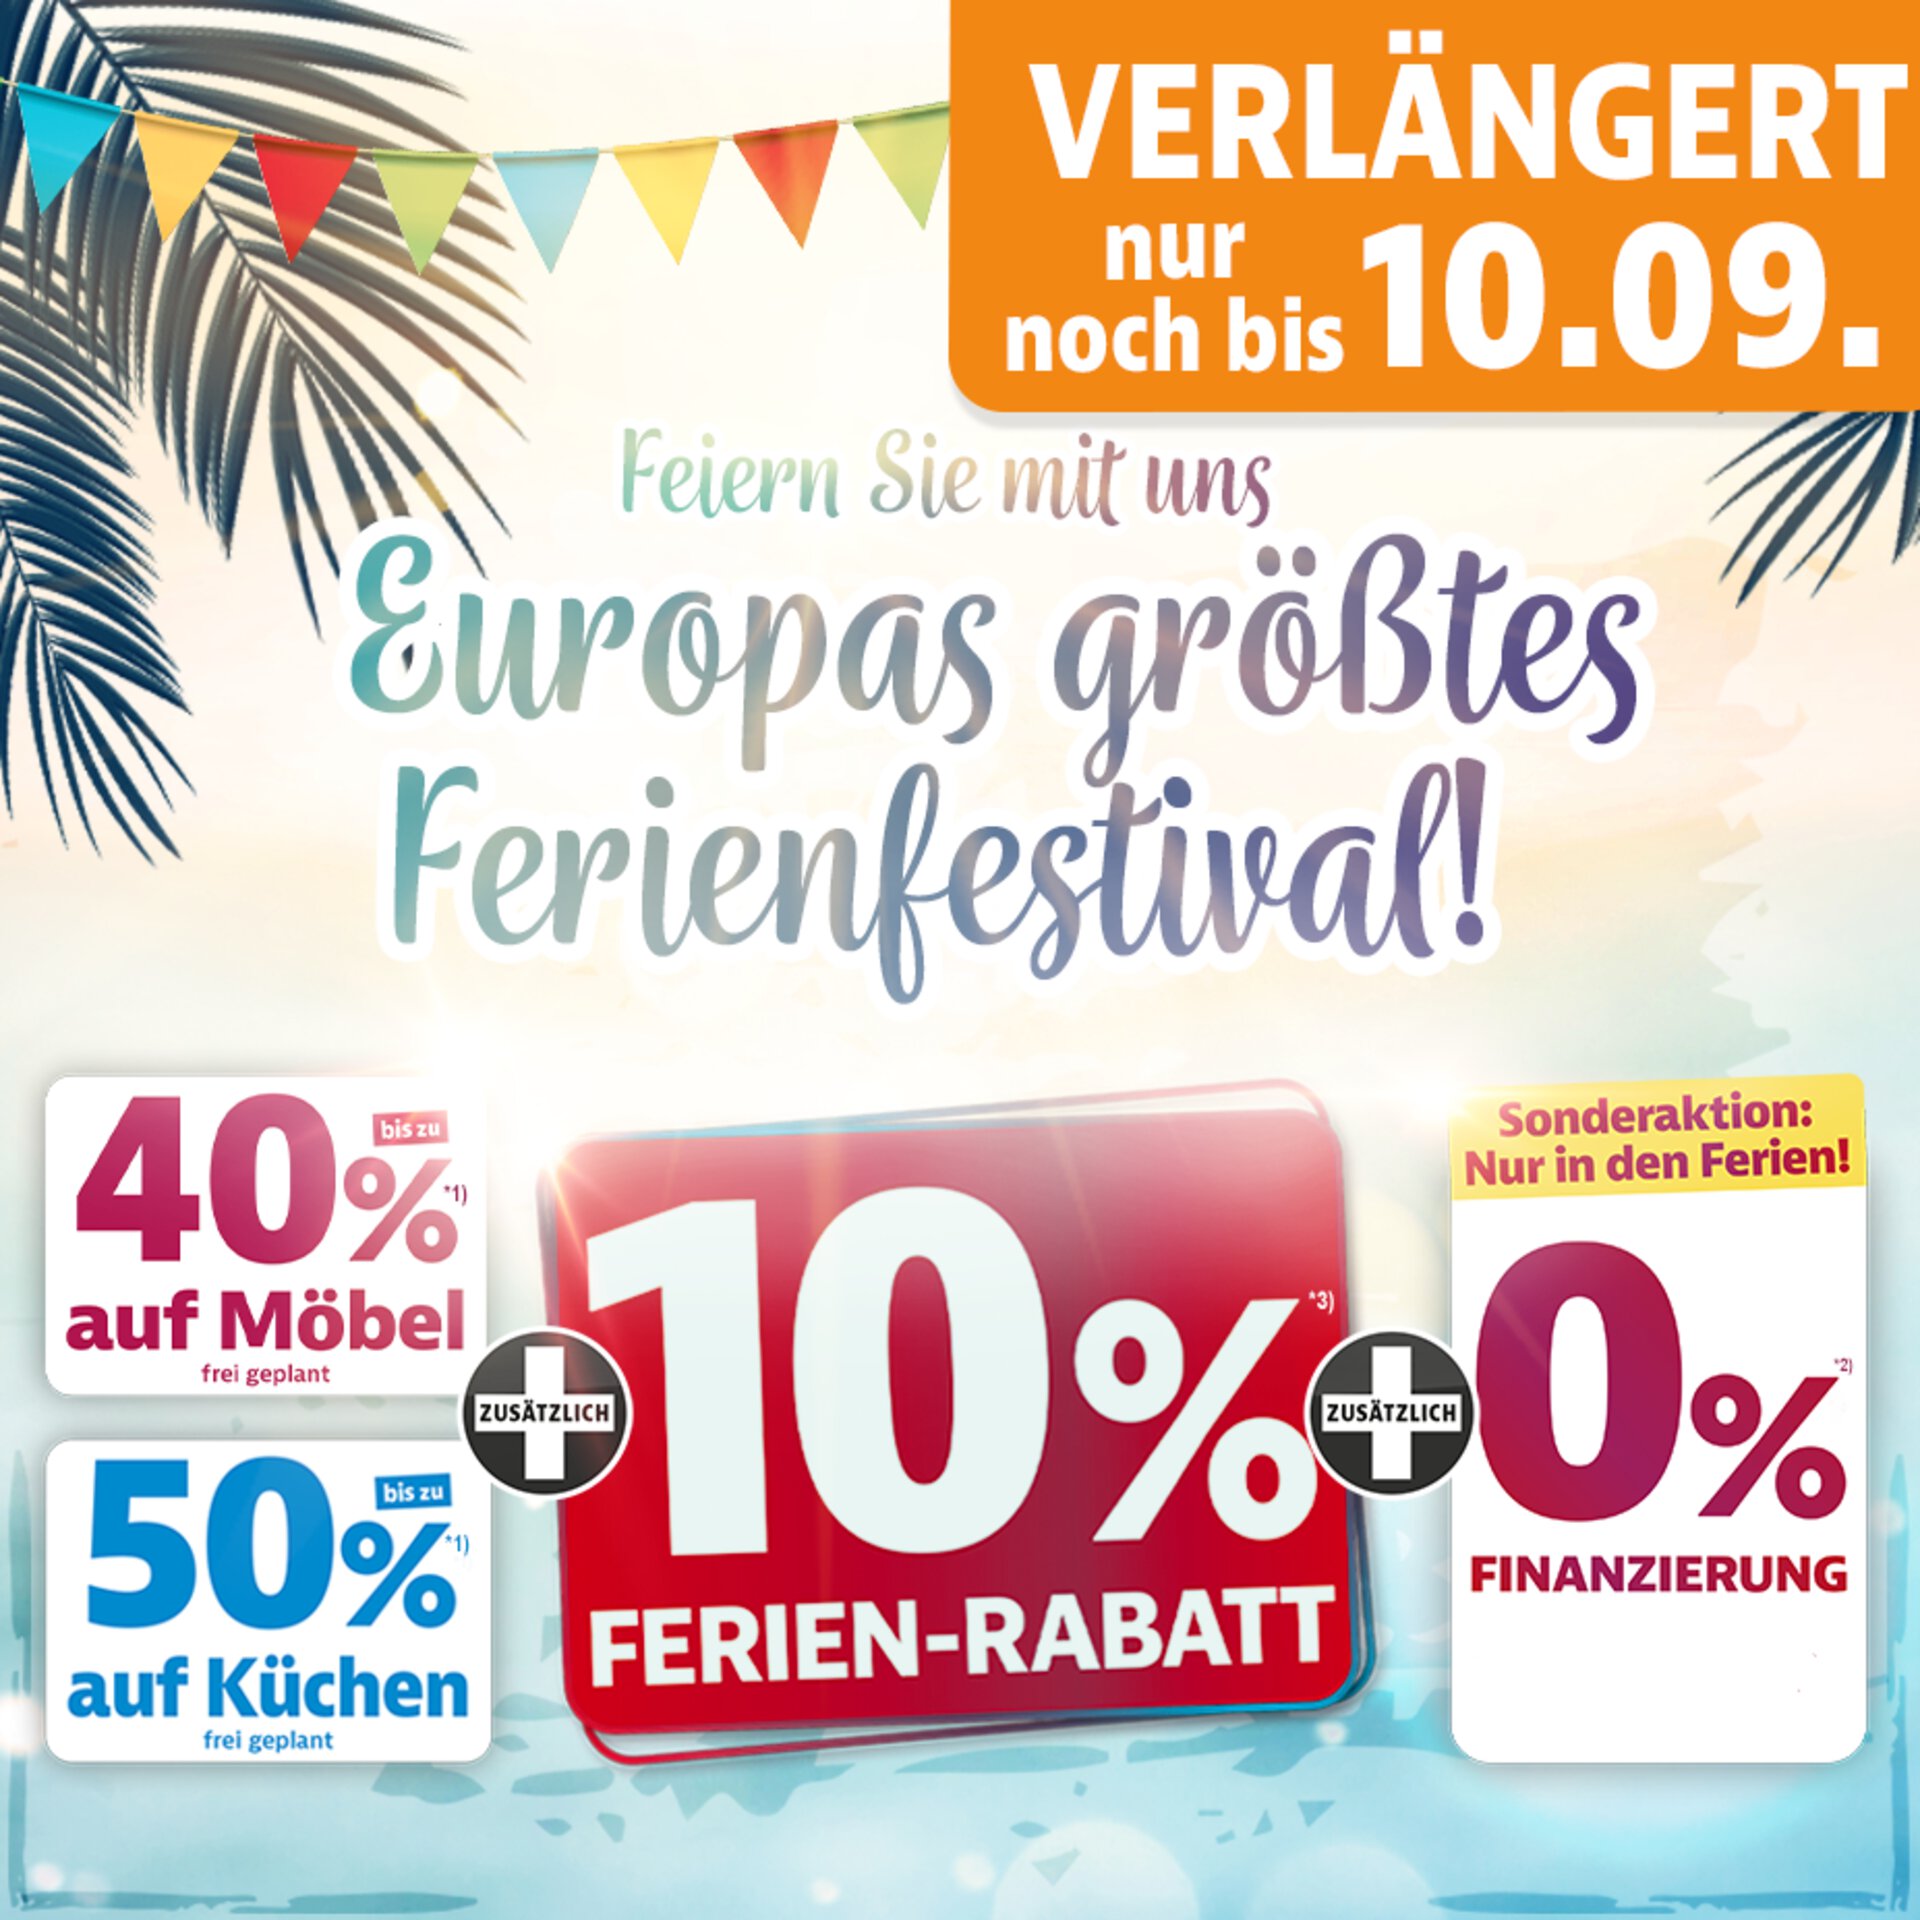 Feiern Sie mit uns Europas größtes Ferienfestival mit 40% auf Möbel 50% auf Küchen plus 10% Ferien-Rabatt bei Möbel Inhofer